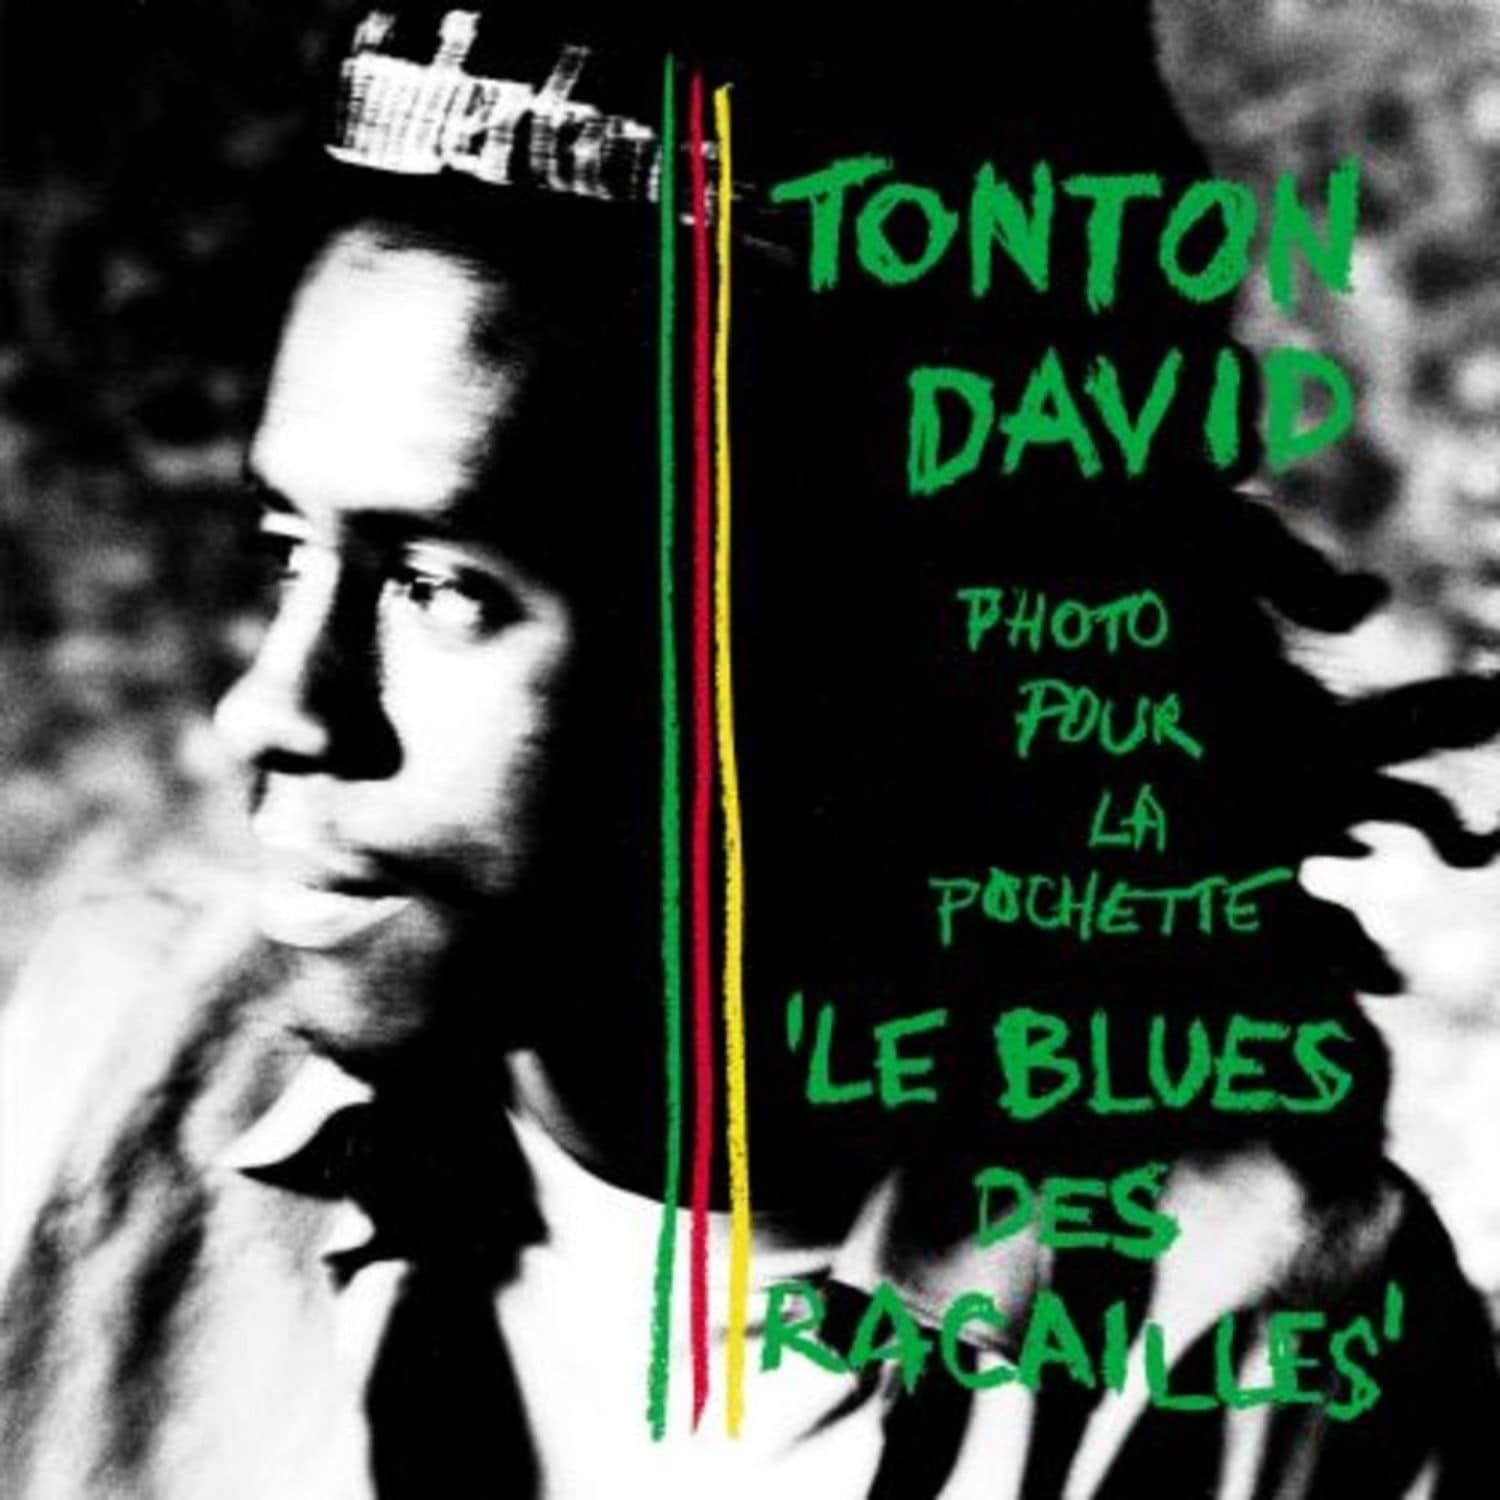 Tonton David - LE BLUES DES RACAILLES 